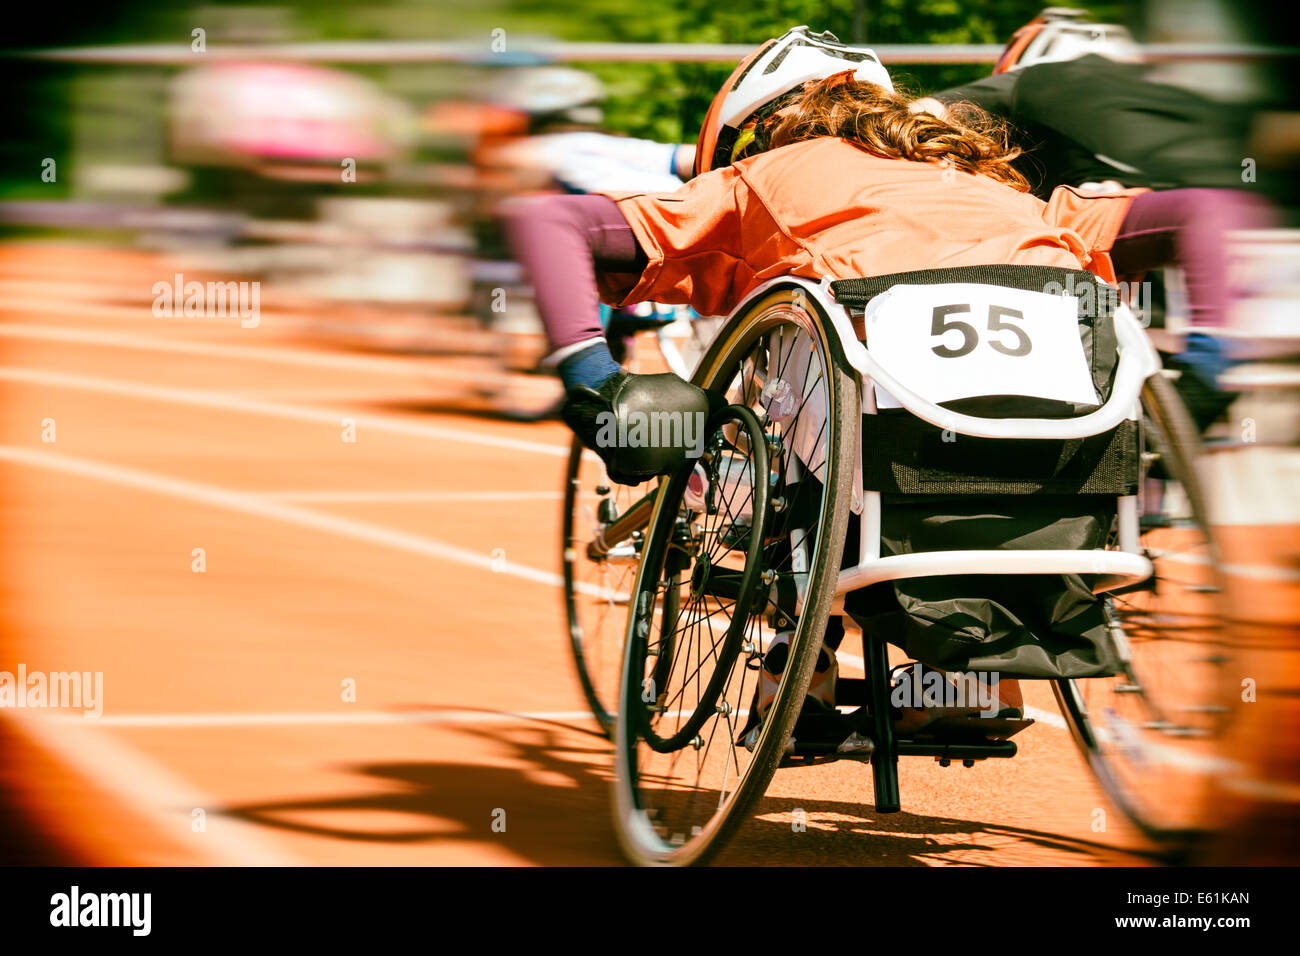 Les athlètes à une course en fauteuil roulant dans un stade avec motion blur, objectif de vignettage et Nik collection Analog Efex Pro 2 effet film Banque D'Images